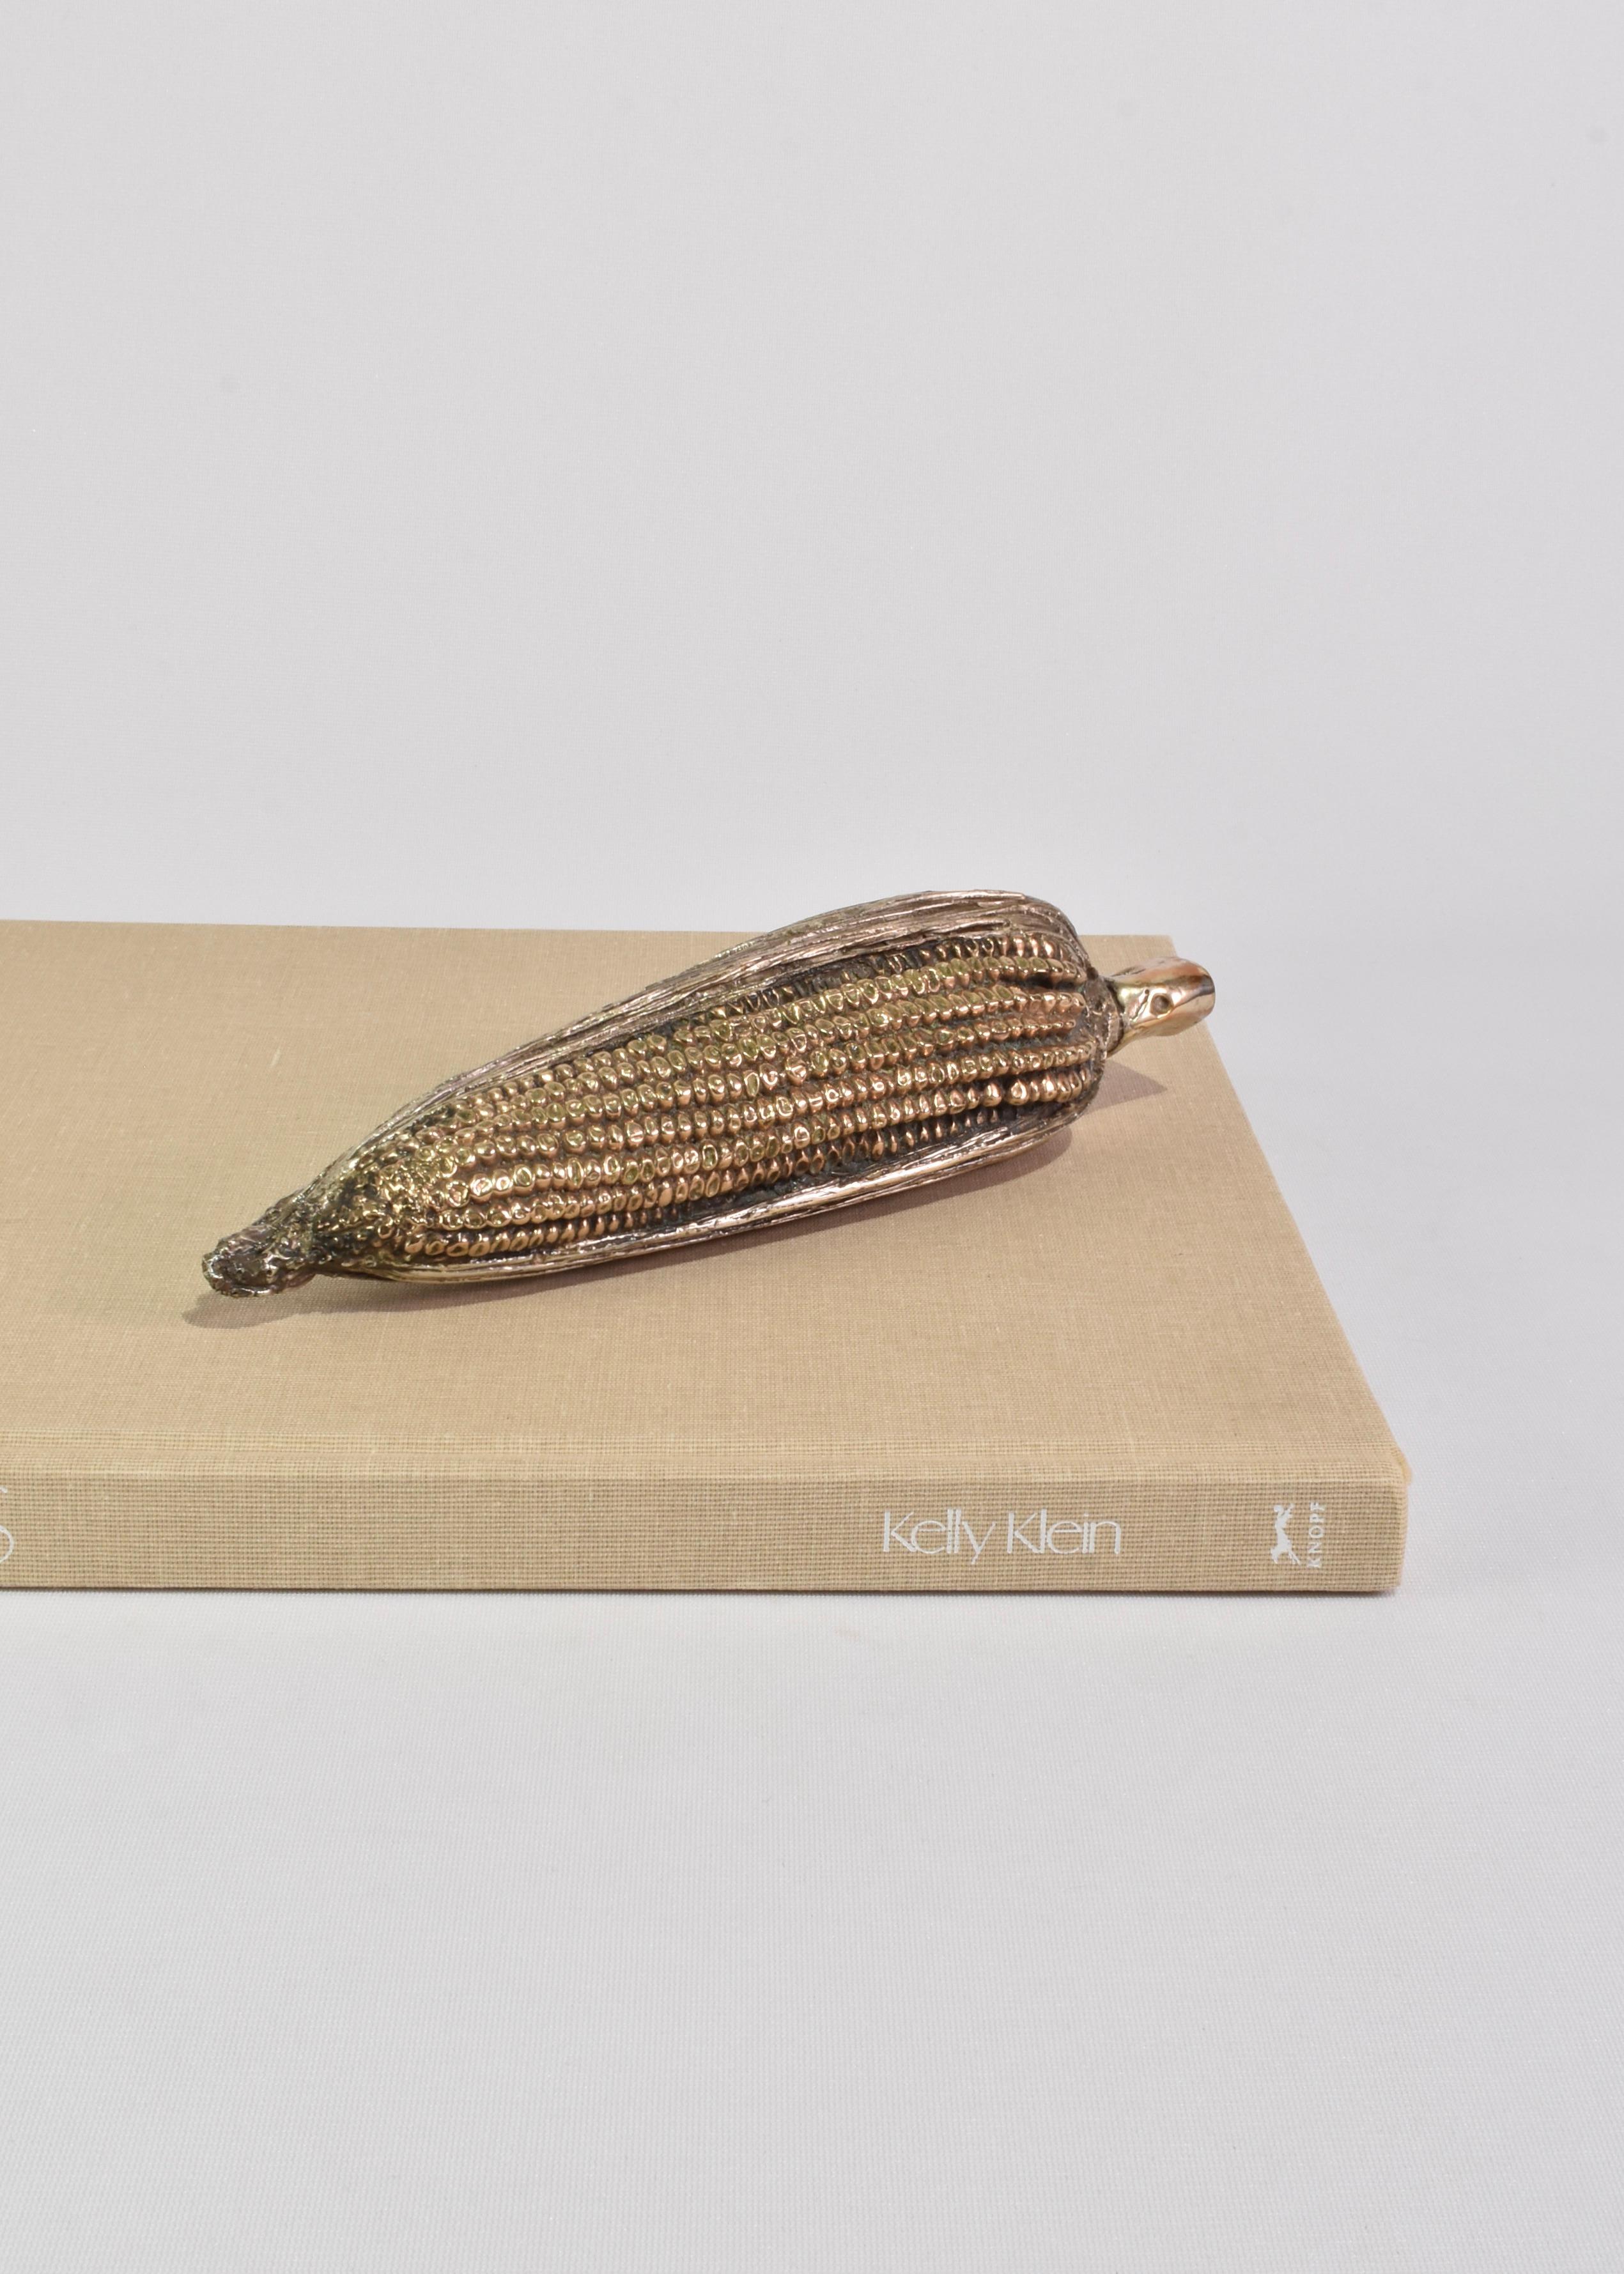 Rare sculpture de maïs en métal moulé, c. 1990. 